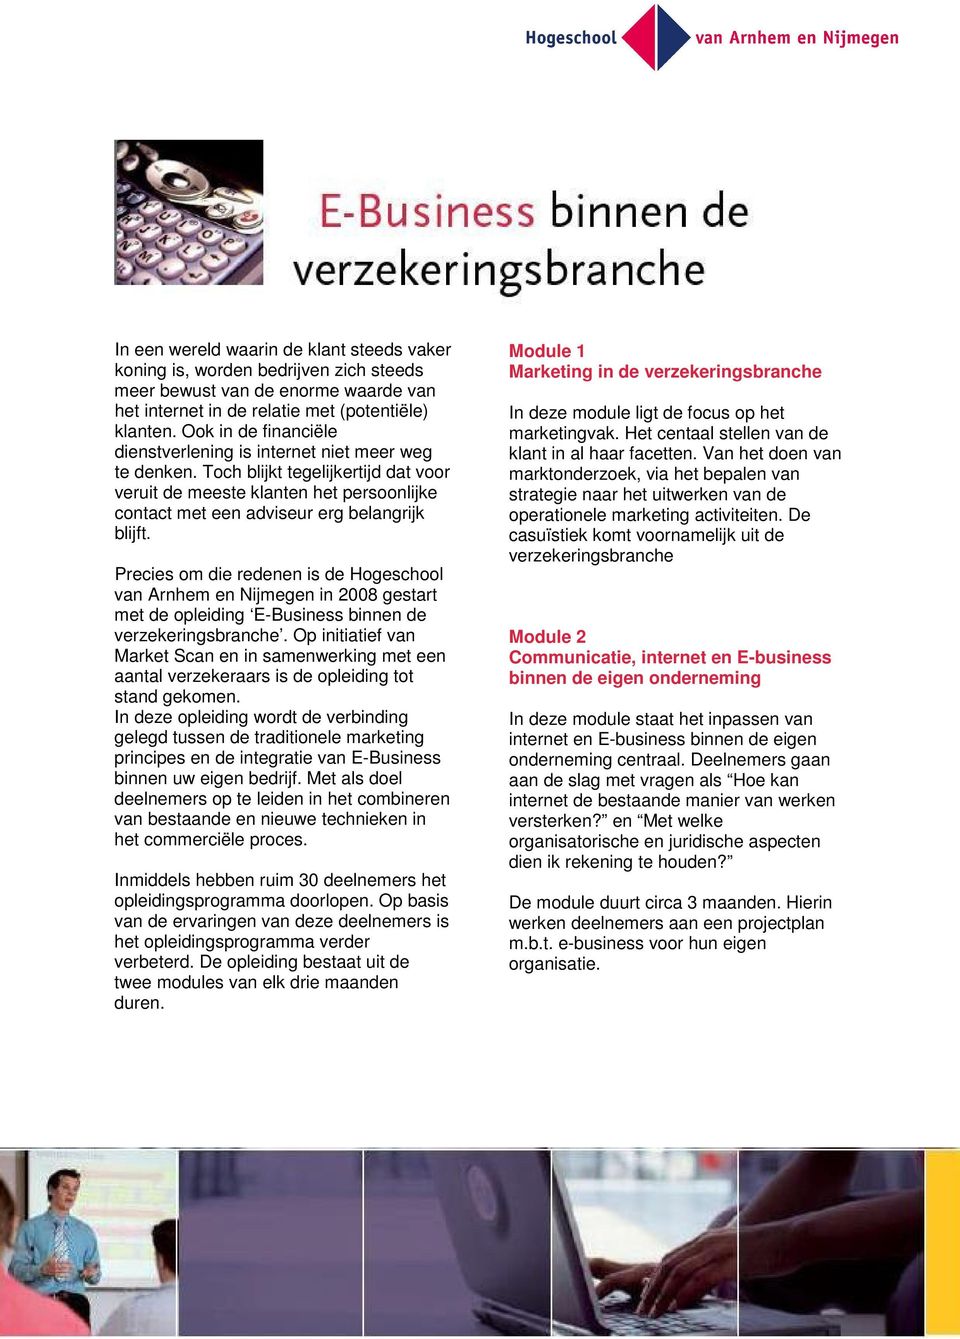 Precies om die redenen is de Hogeschool van Arnhem en Nijmegen in 2008 gestart met de opleiding E-Business binnen de verzekeringsbranche.